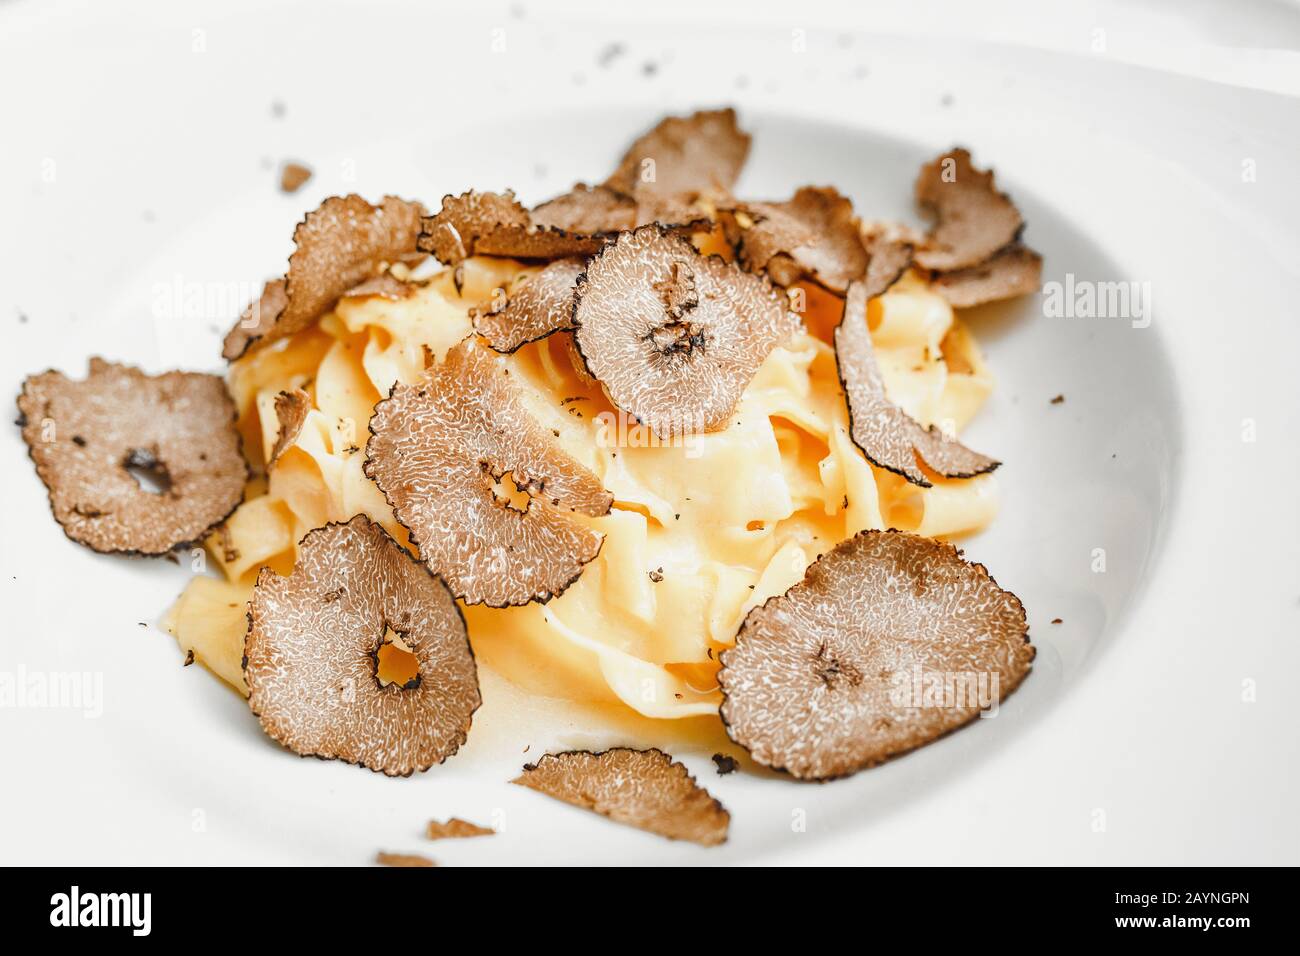 Köstliche italienische Pasta mit Trüffelpilzchips auf dem Tisch im Luxus-Restaurant. Stockfoto